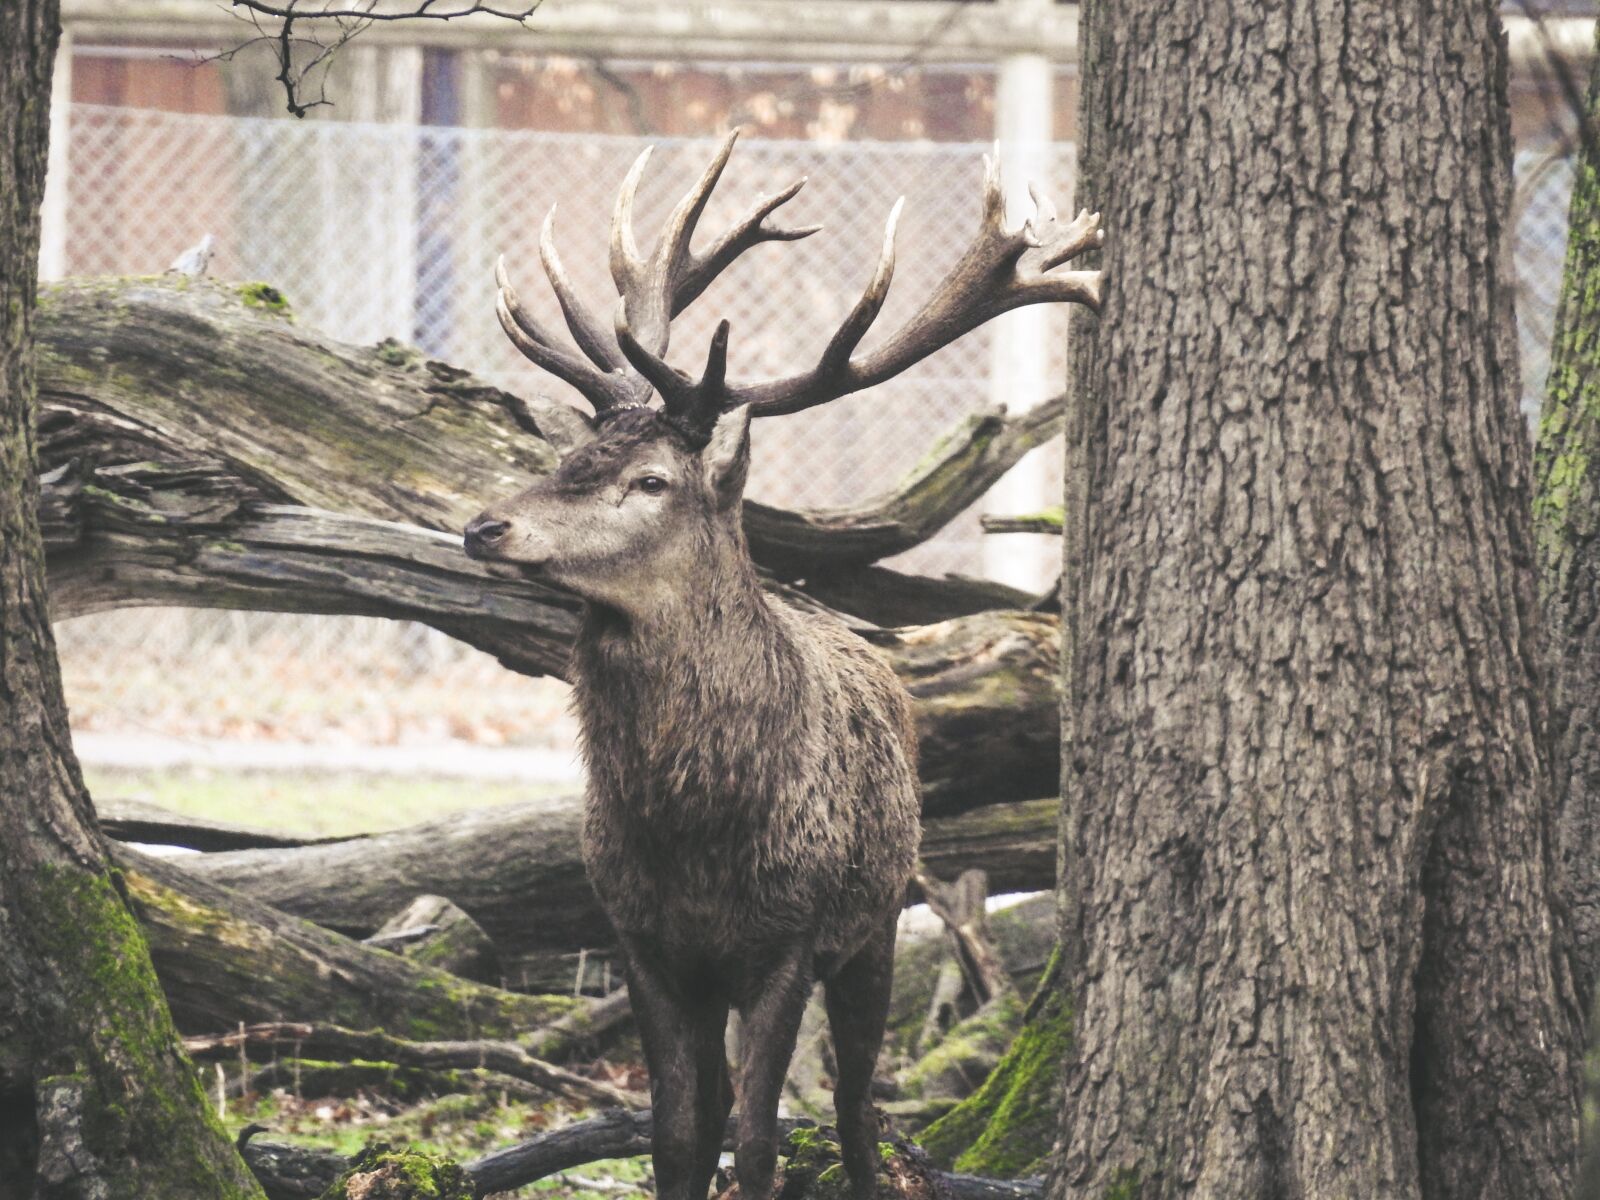 Nikon Coolpix P900 sample photo. Deer, nature, animal photography